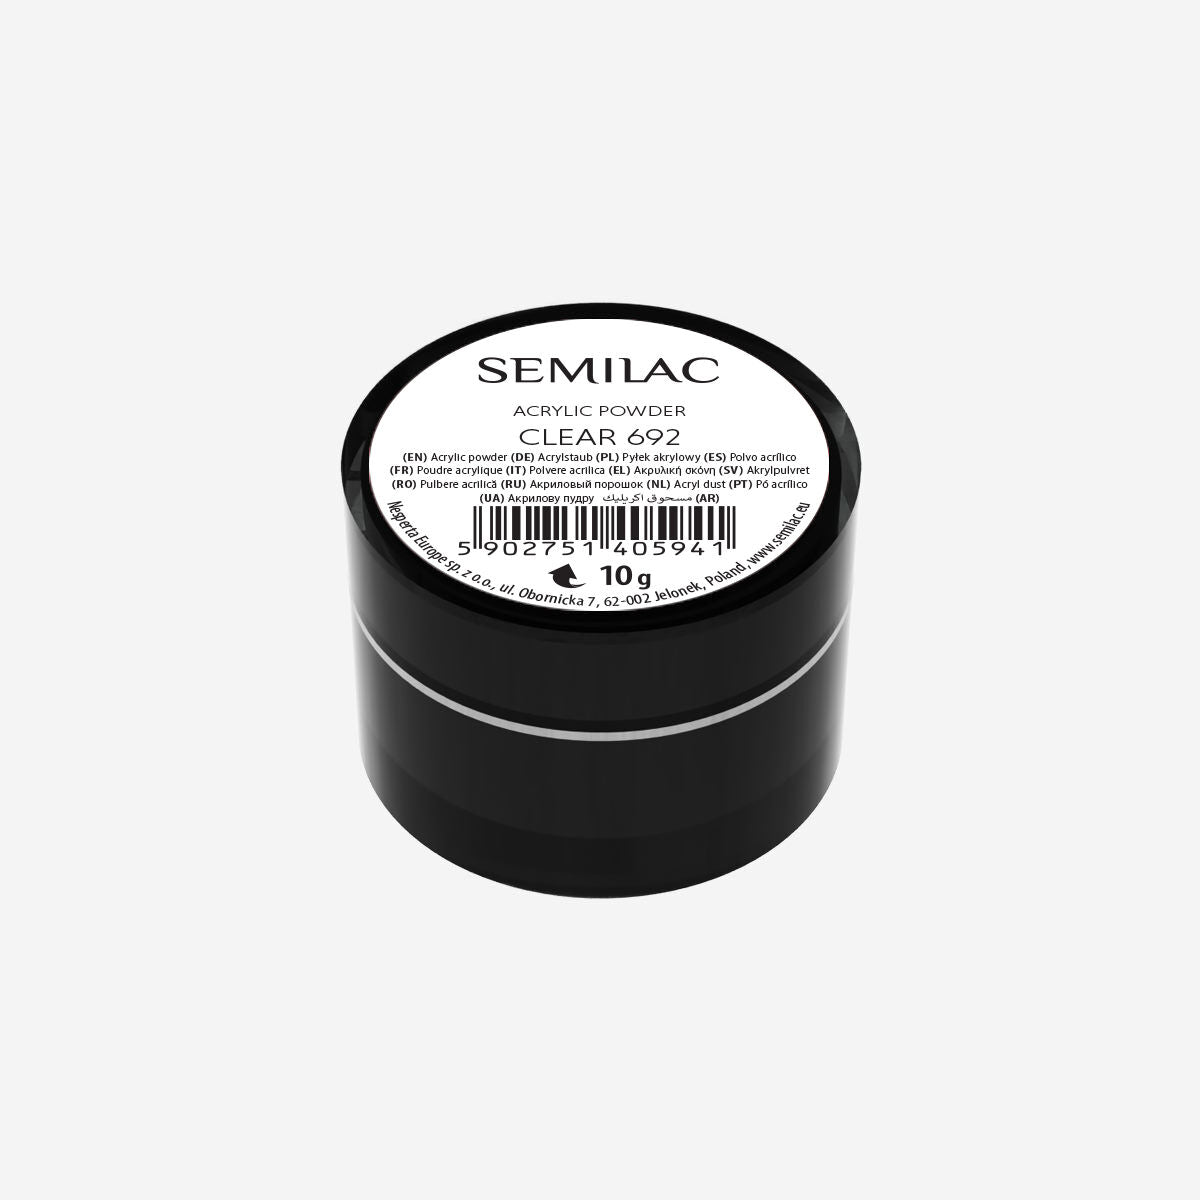 Semilac Acrylic Powder Clear 692 - Semilac UK